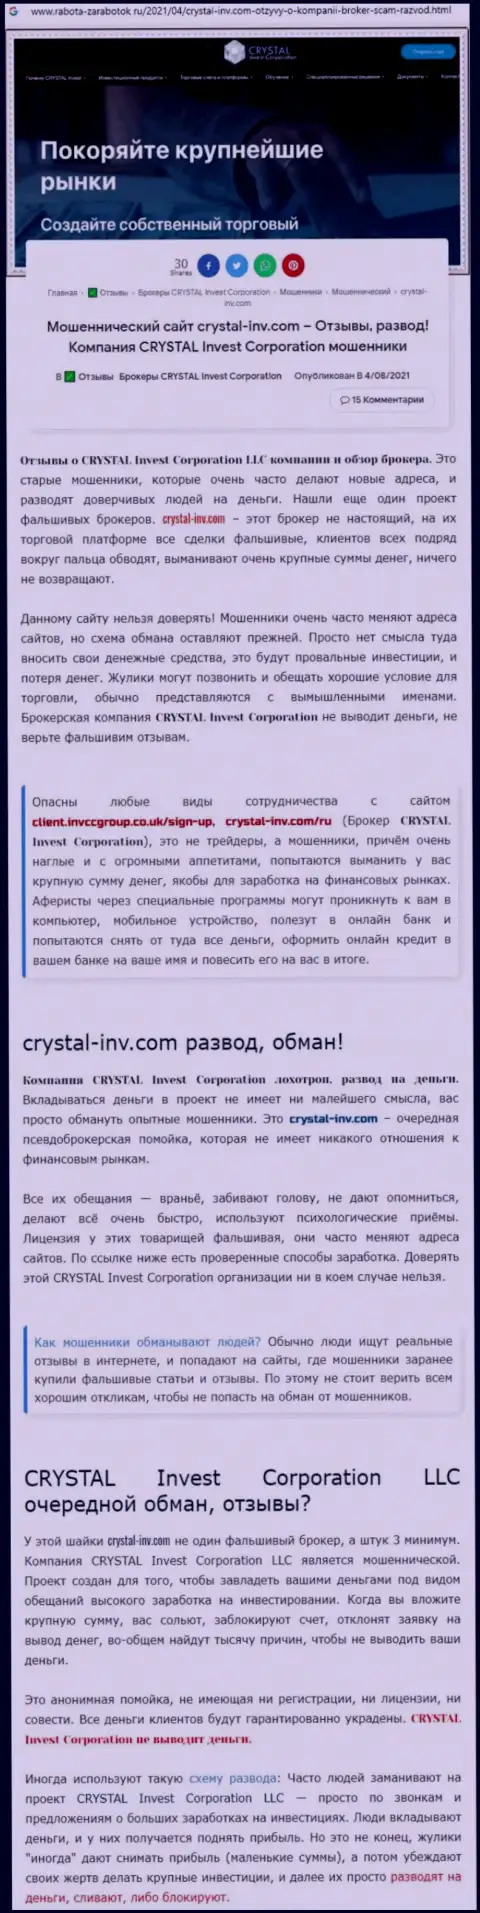 Материал, выводящий на чистую воду контору Crystal-Inv Com, который позаимствован с веб-портала с обзорами различных компаний